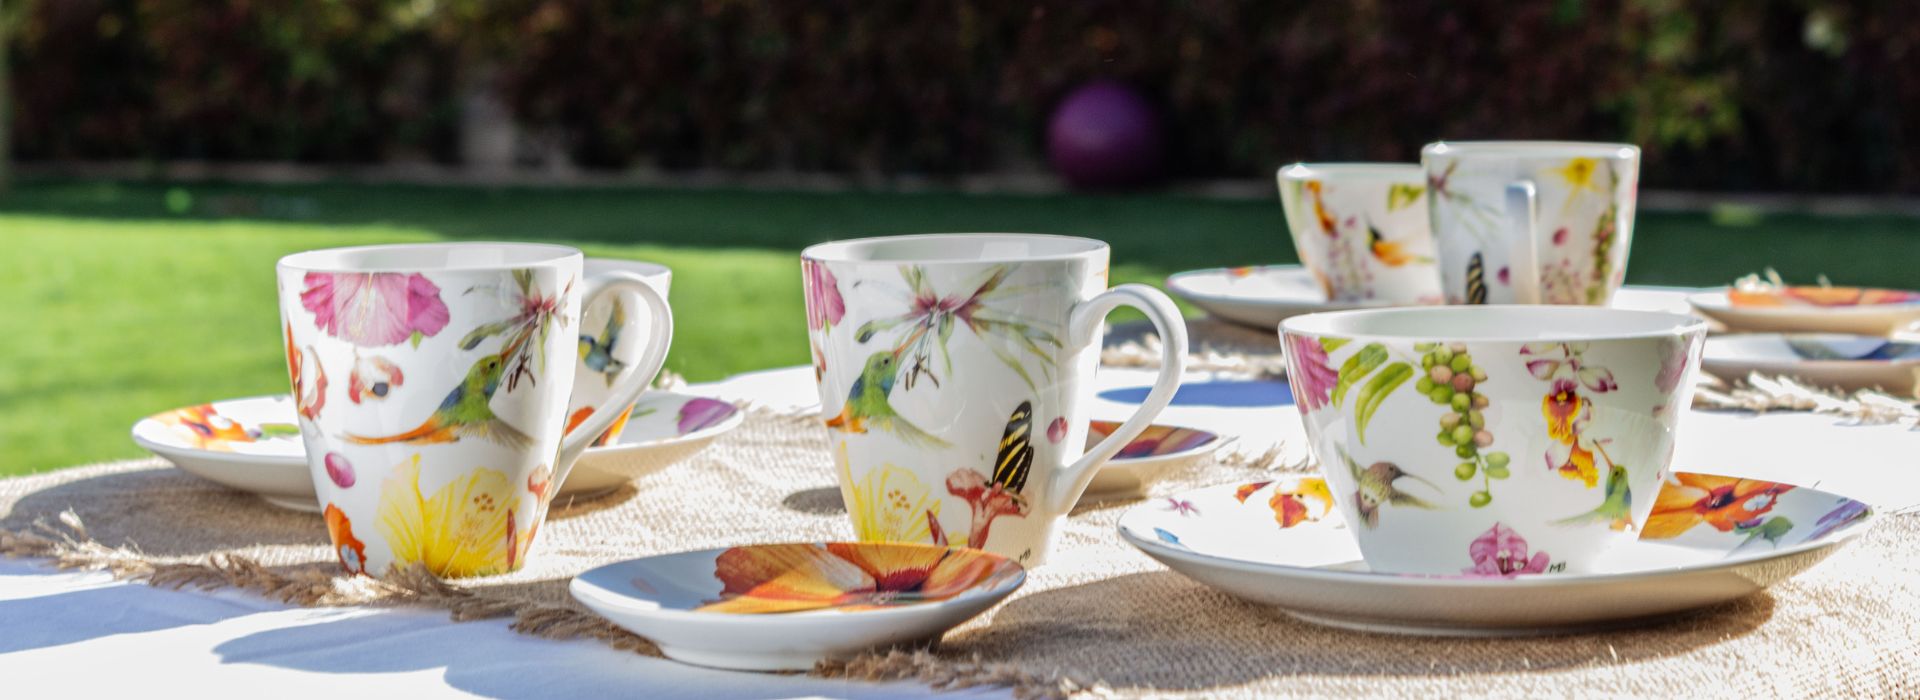 mesa de jardín con tazas y platos de porcelana blanca estampada con colibrís y flores de colores